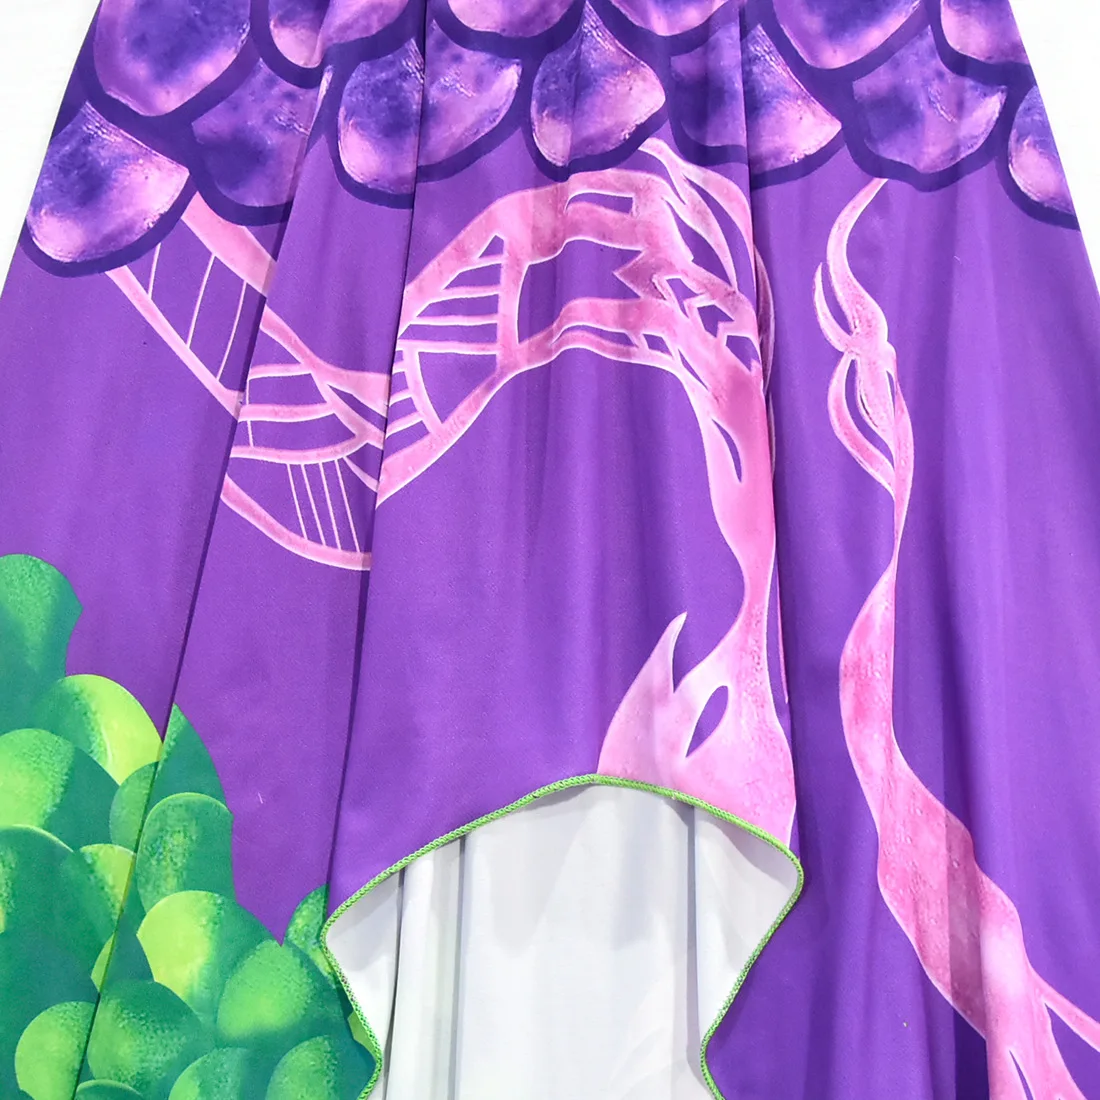 Фильм потомки 3 ТЗА костюм для косплея фиолетового цвета юбка платье костюм на Хэллоуин платье принцессы